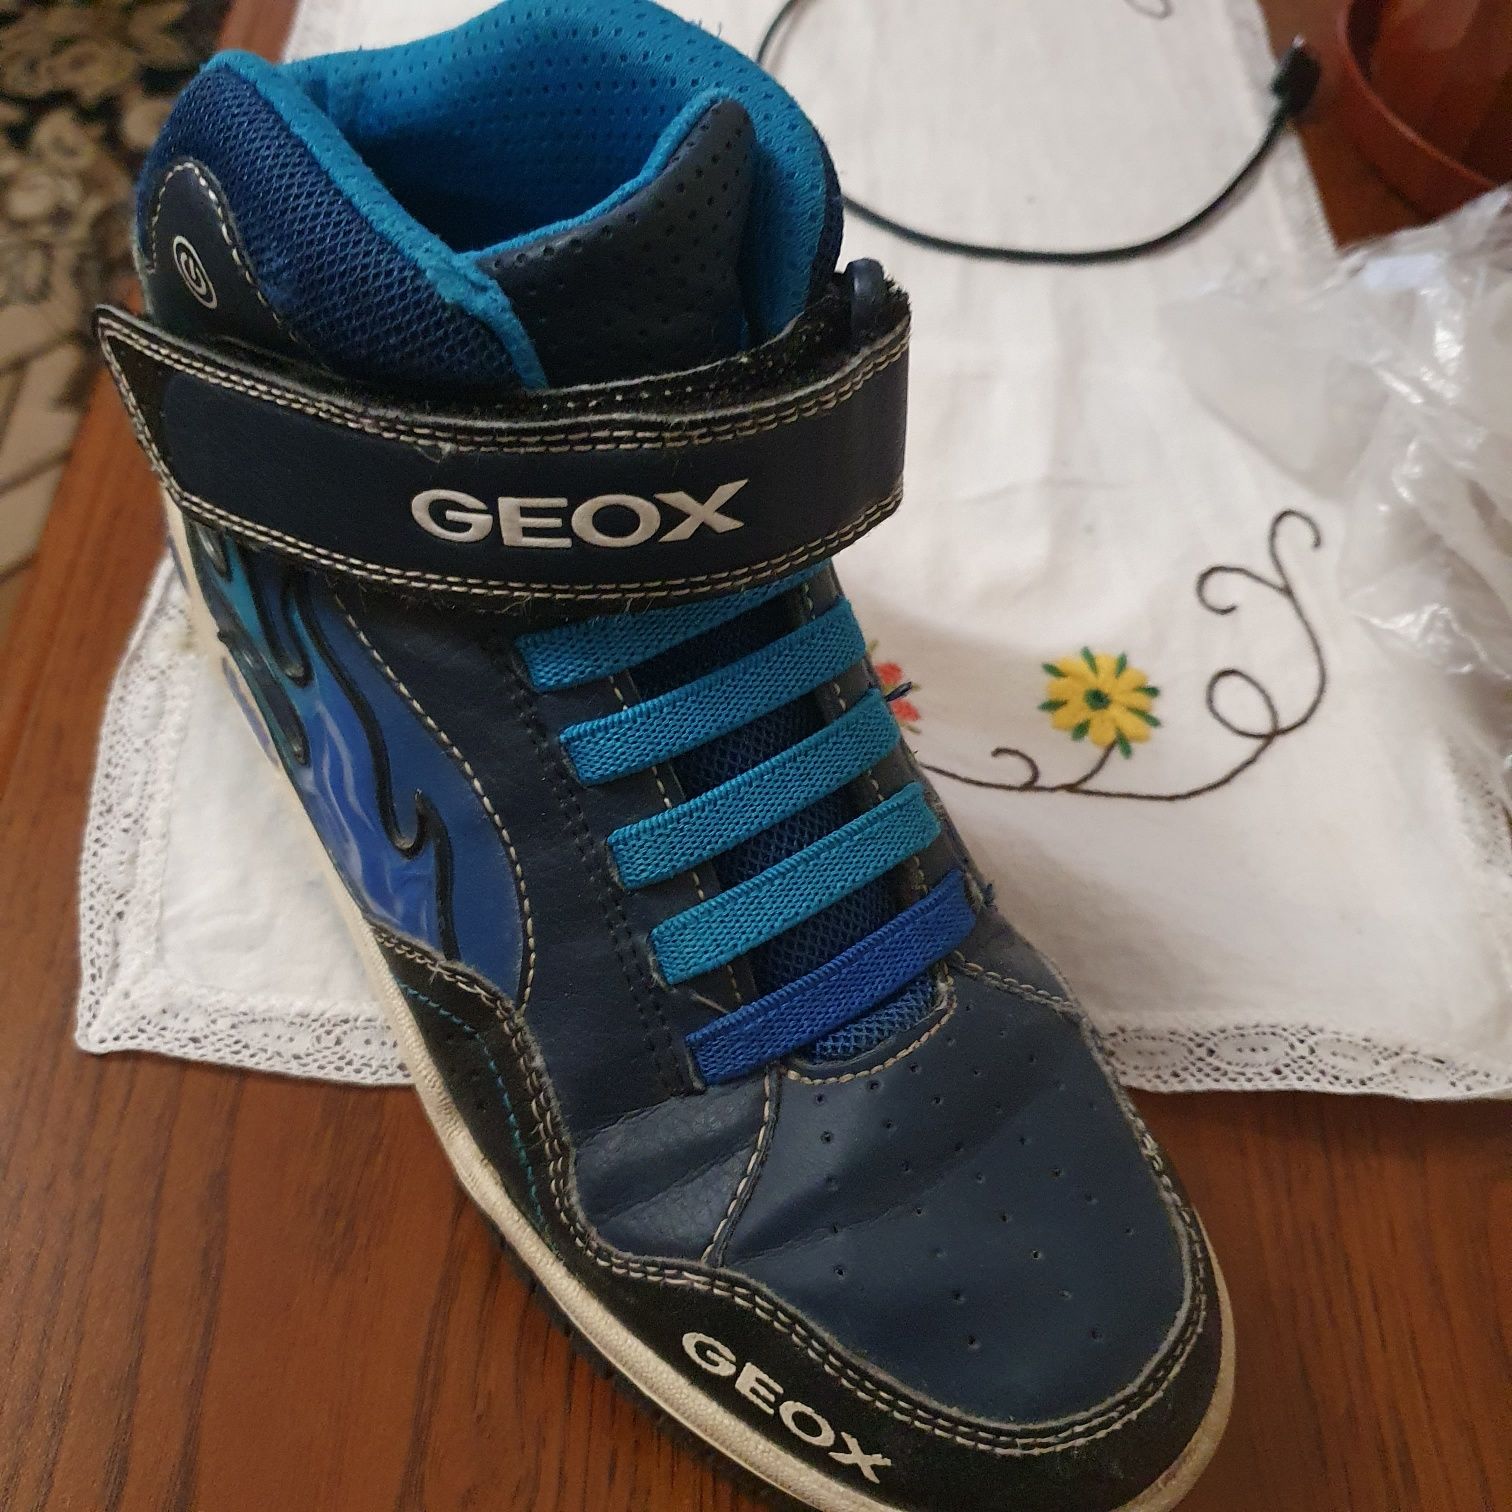 Ботинки известной фирмы Geox